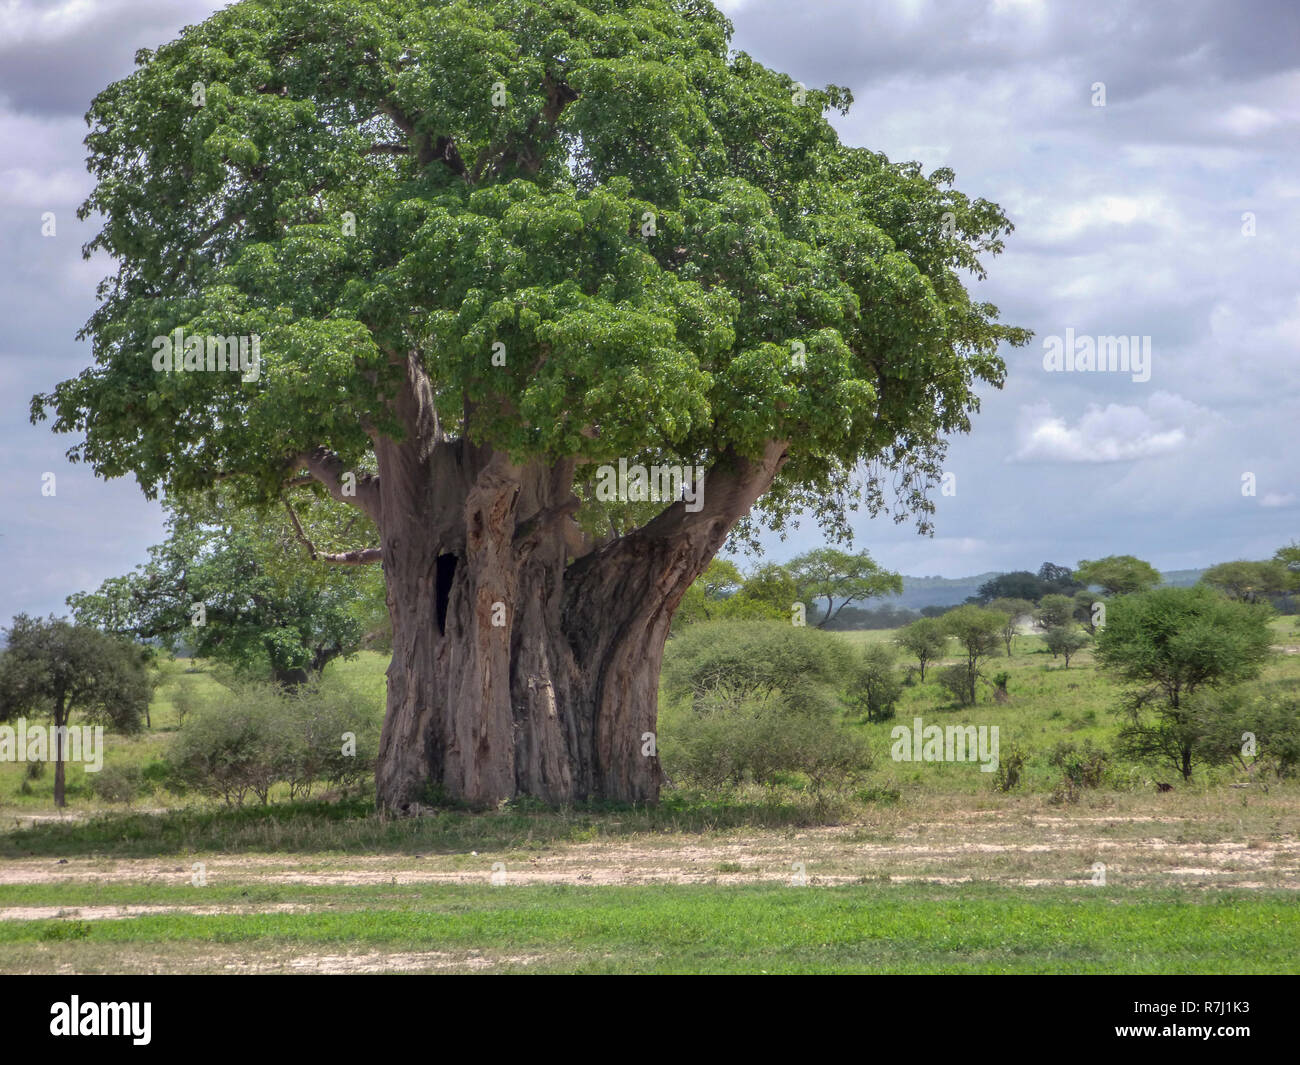 Lone baobab (Adansonia digitata). Este árbol se encuentra en las regiones cálidas y áridas de África subsahariana. Tiene un gran baúl para almacenar agua. Foto Foto de stock